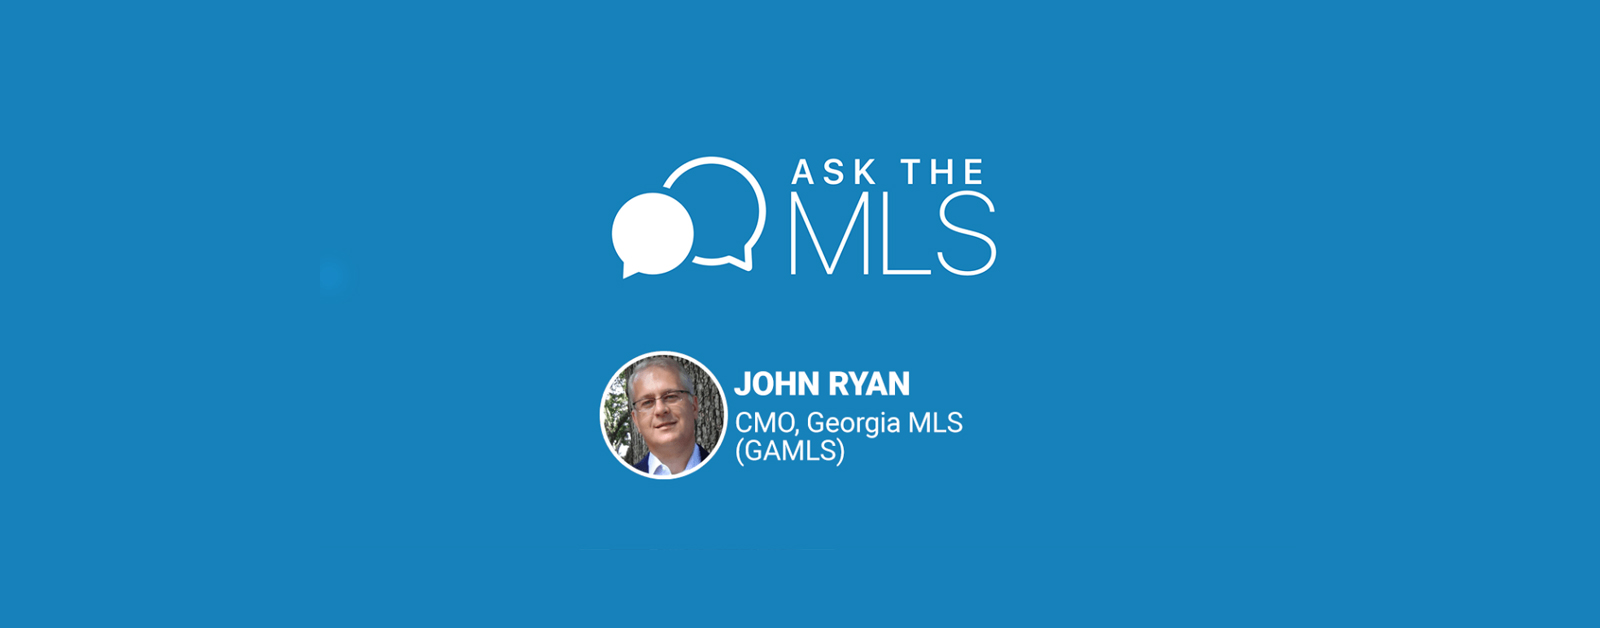 Ask the MLS John Ryan